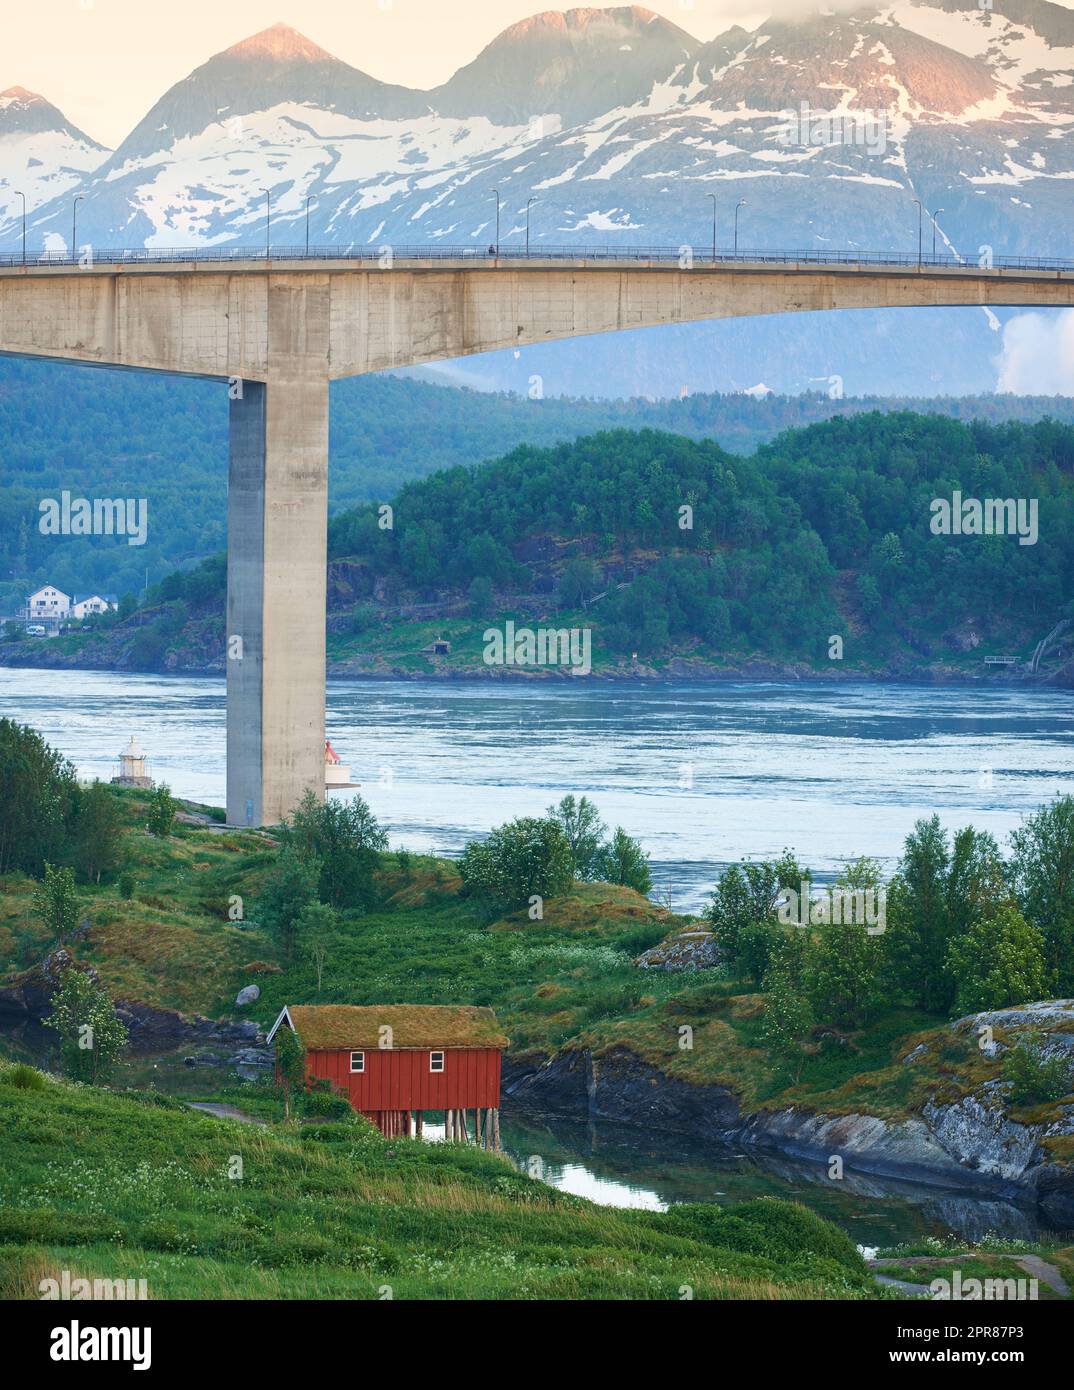 Vue sur le paysage du pont de Saltsaumen dans le Nordland, Norvège en hiver. Paysage d'infrastructure de transport au-dessus d'une rivière ou d'un ruisseau avec un fond de montagne enneigé. Une cabine isolée outre-mer Banque D'Images